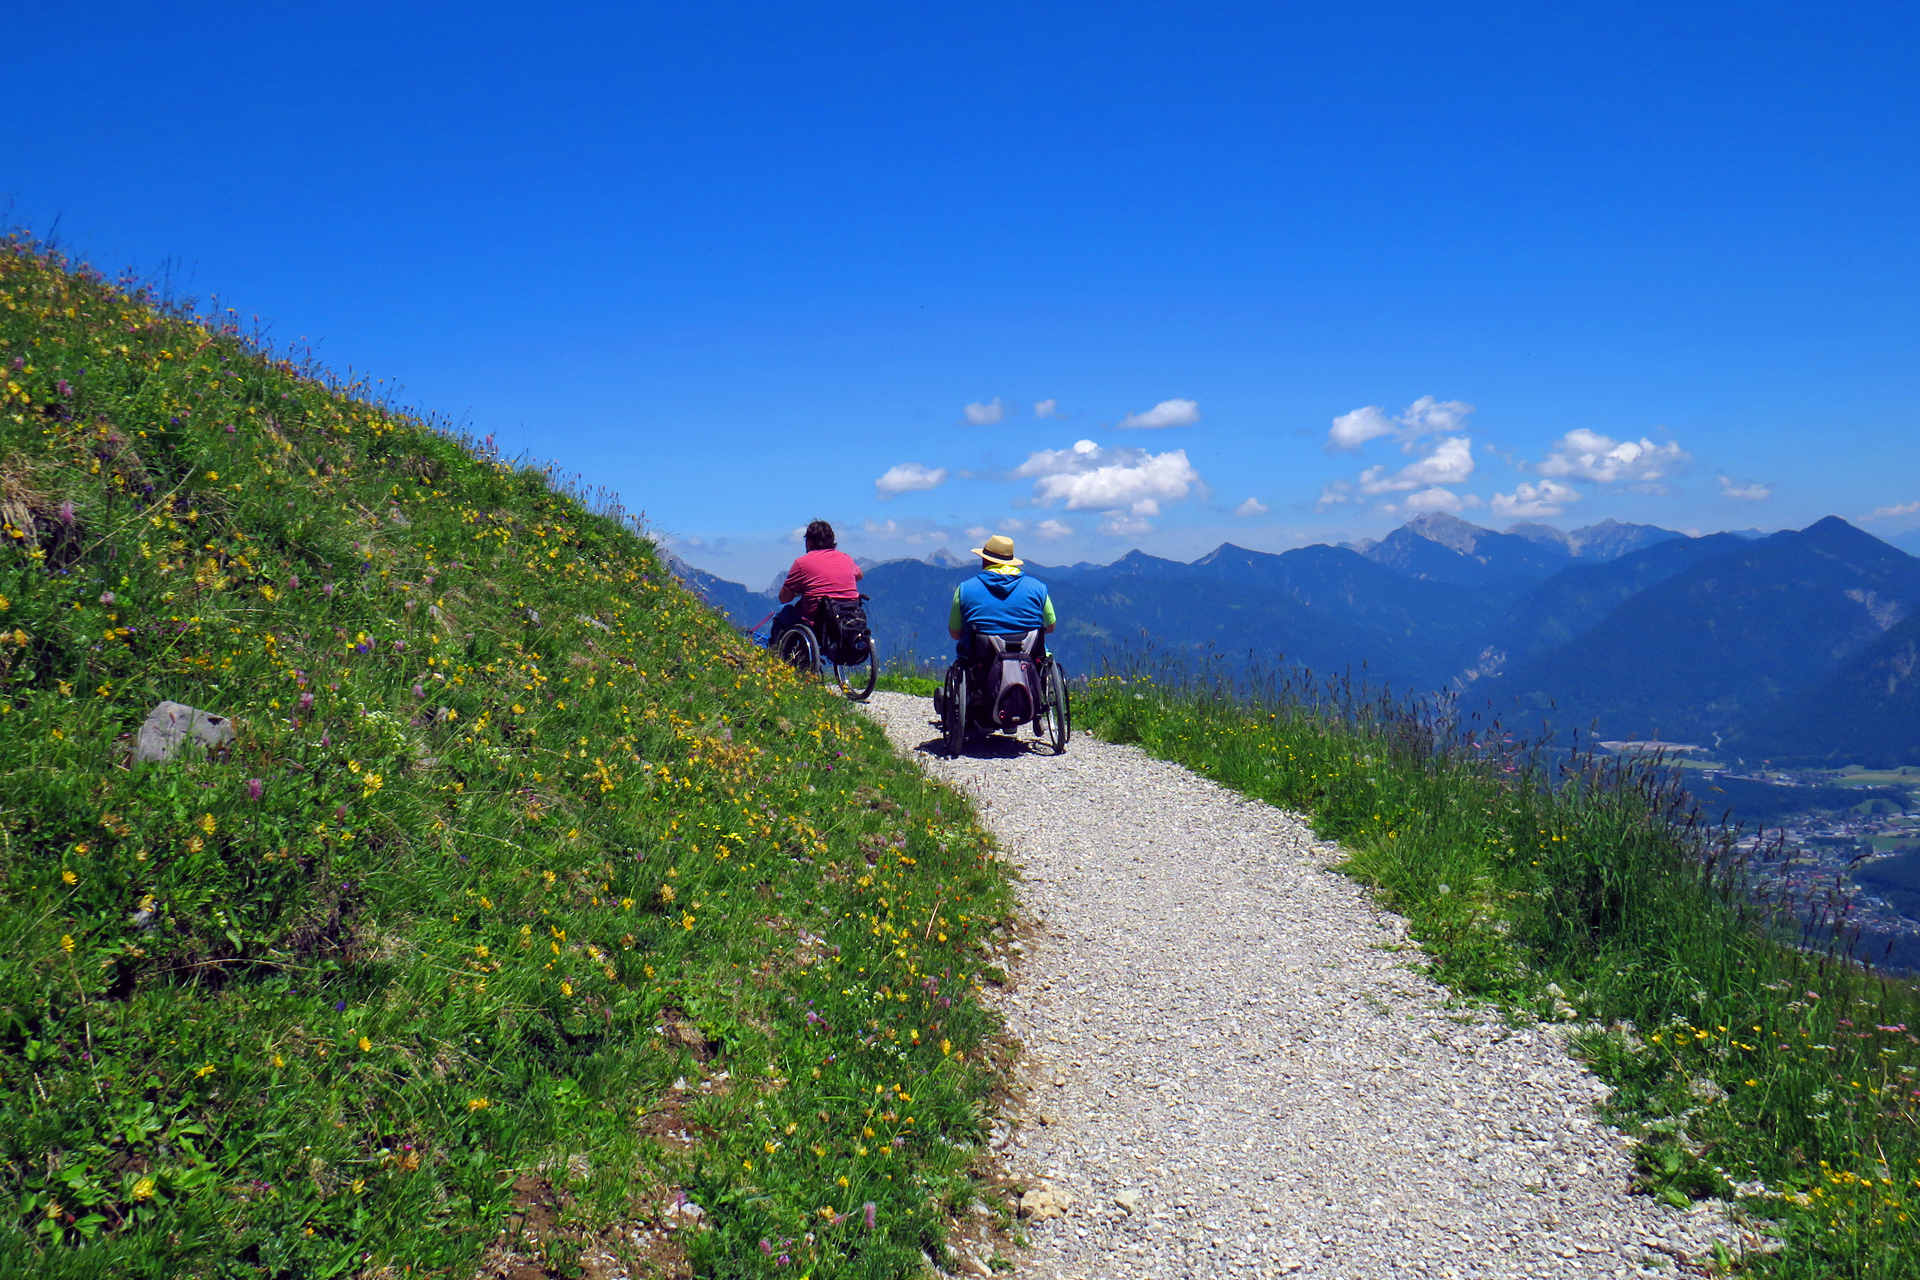 Man sieht zwei Männer im Rollstuhl sitzend von uns weg fahren. Der Spazierweg geht durch eine satt grüne Bergwiese. Im Hintergrund sieht man ins Tal beziehungsweise die Berge, über denen ein paar kleine Wolken sind. Ansonsten ist der HImmel strahlend blau. 